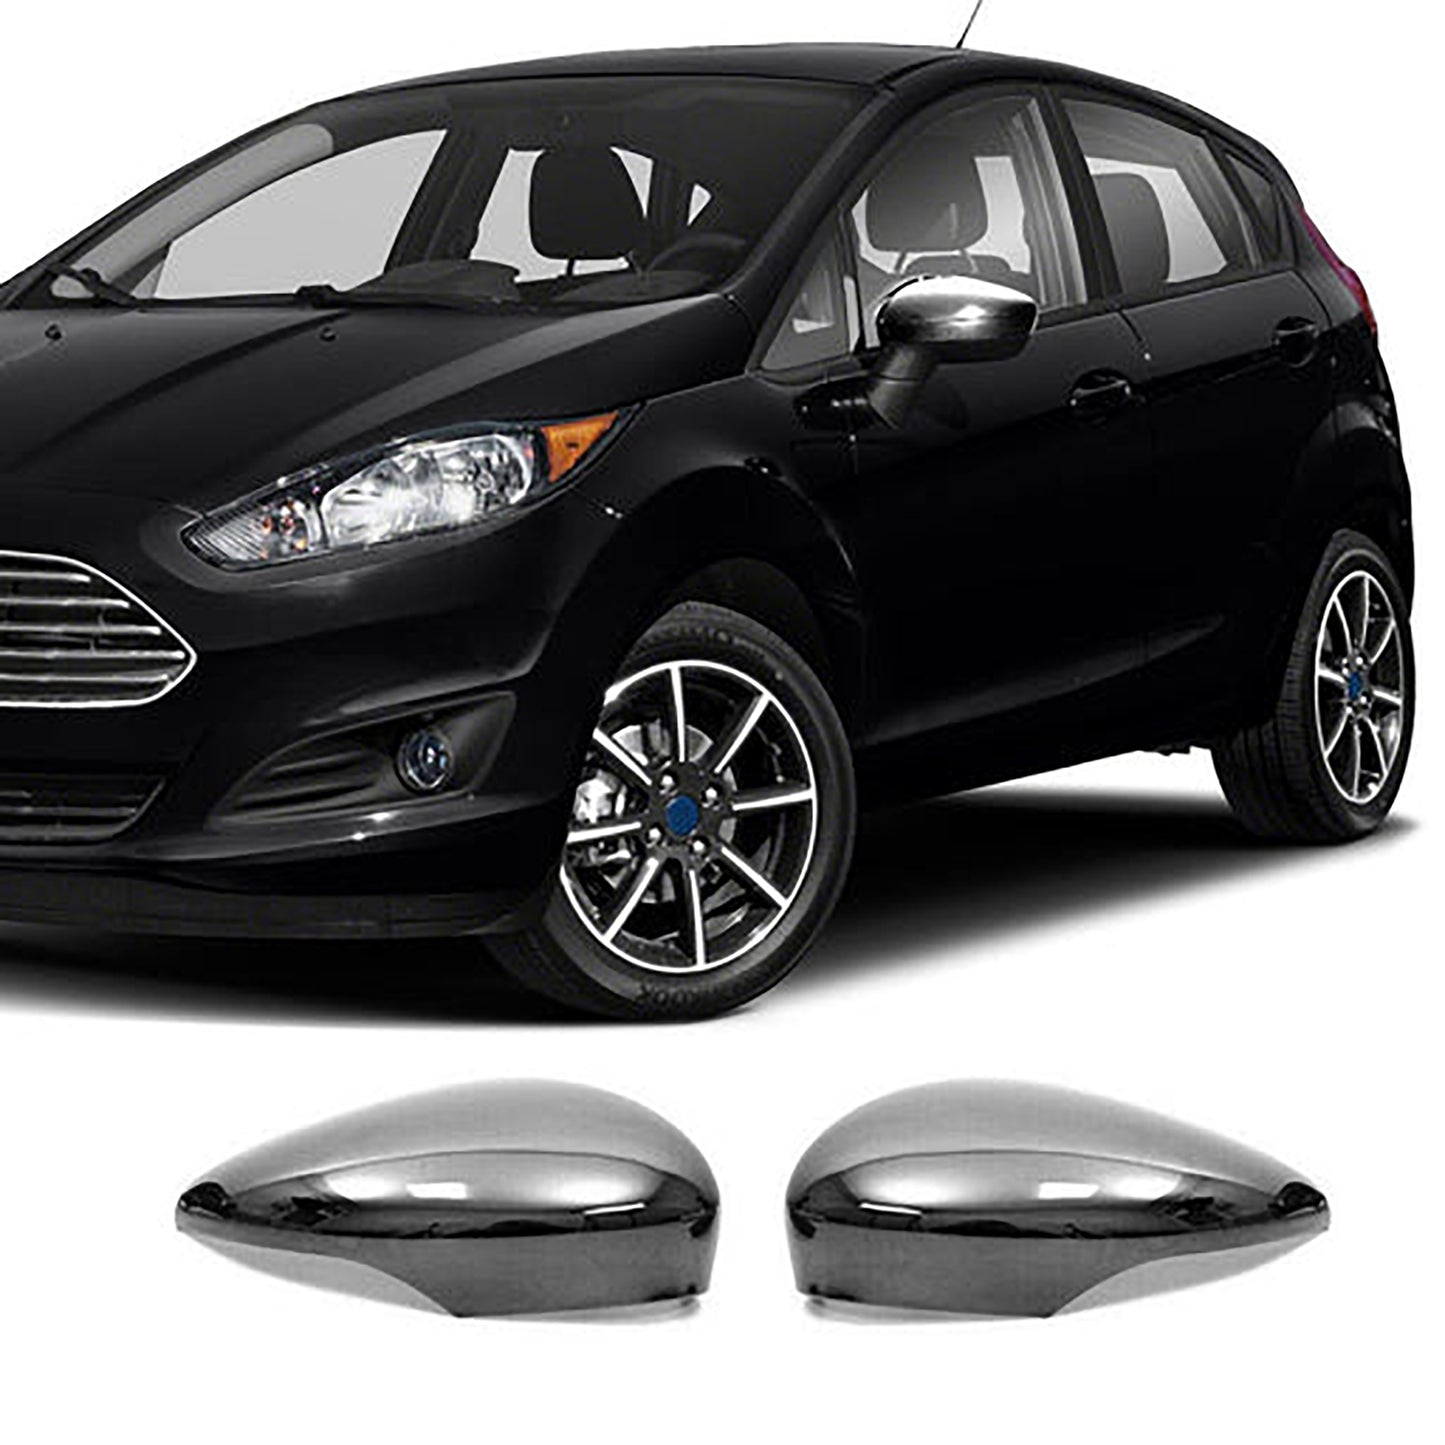 Ford Fiesta Krom Ayna Kapağı Aksesuarları Detaylı Resimleri, Kampanya bilgileri ve fiyatı - 7